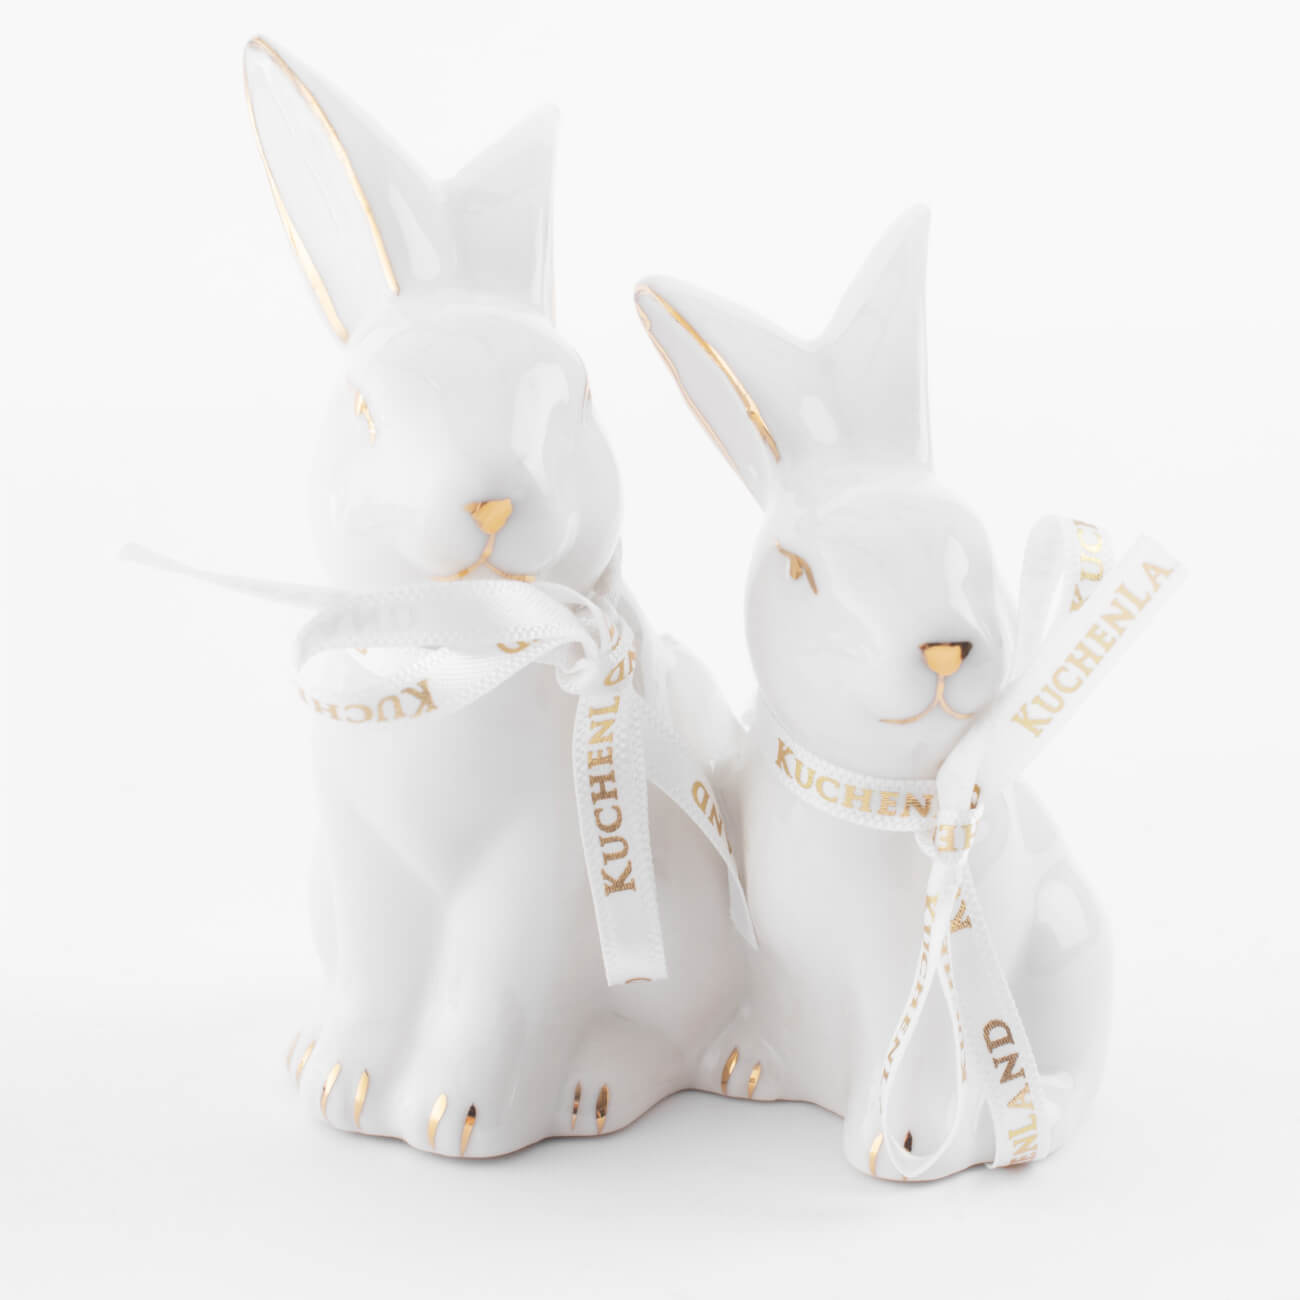 Статуэтка, 9 см, фарфор P, бело-золотистая, Кролики, Easter gold статуэтка 13 см полирезин бело золотистая кролик с очным ожерельем easter gold